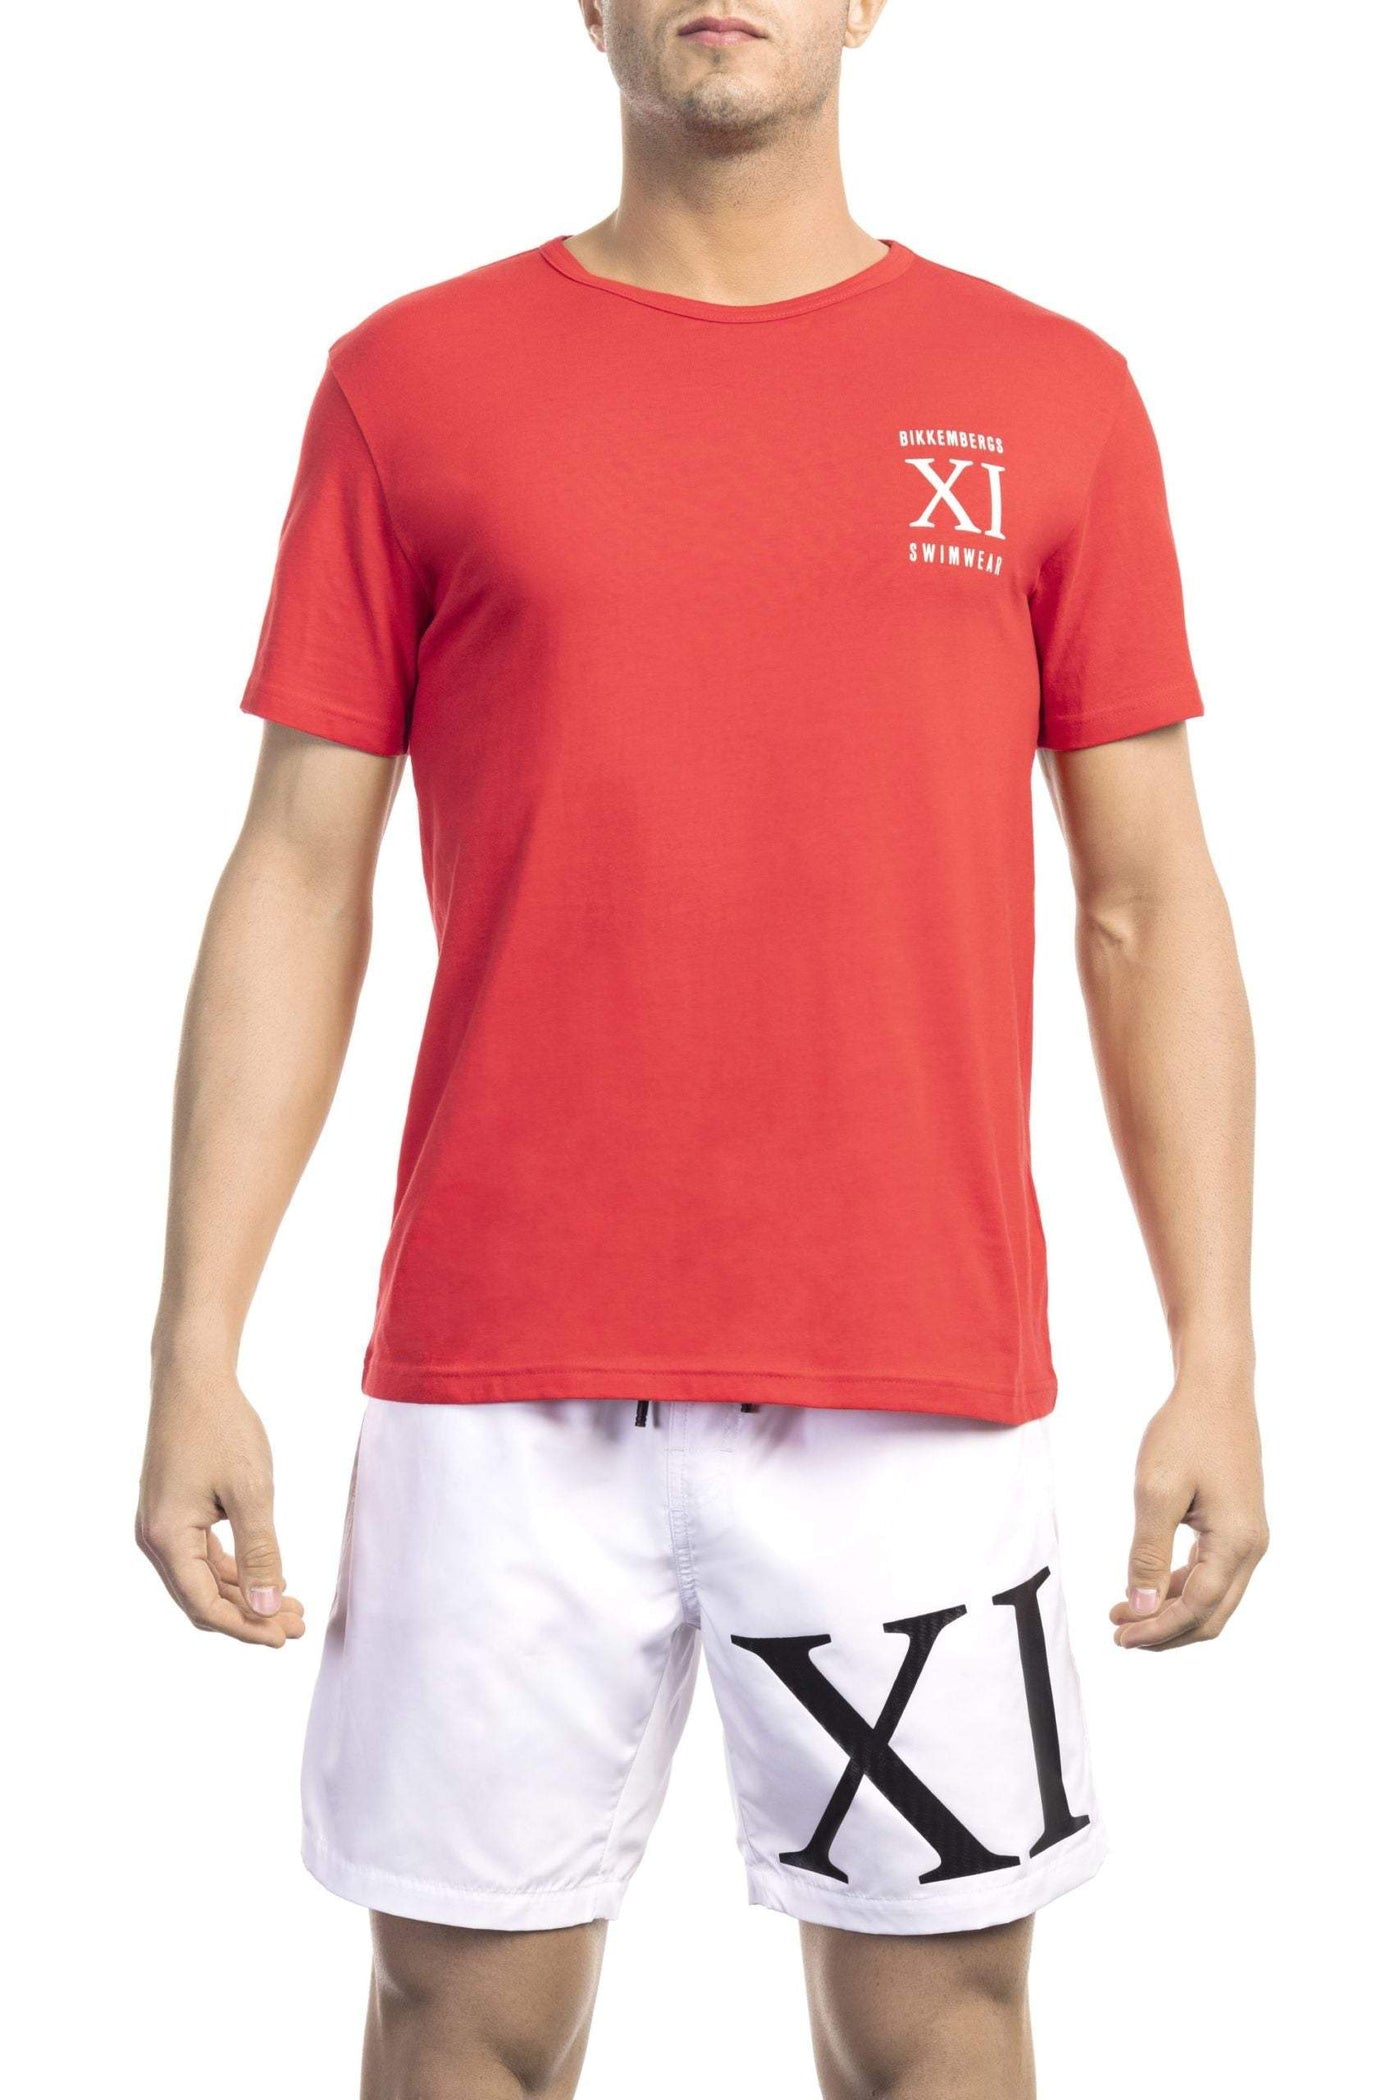 Bikkembergs Red Cotton T-Shirt #men, Bikkembergs, feed-1, L, M, Red, S, T-Shirts - Men - Clothing, XL, XXL at SEYMAYKA